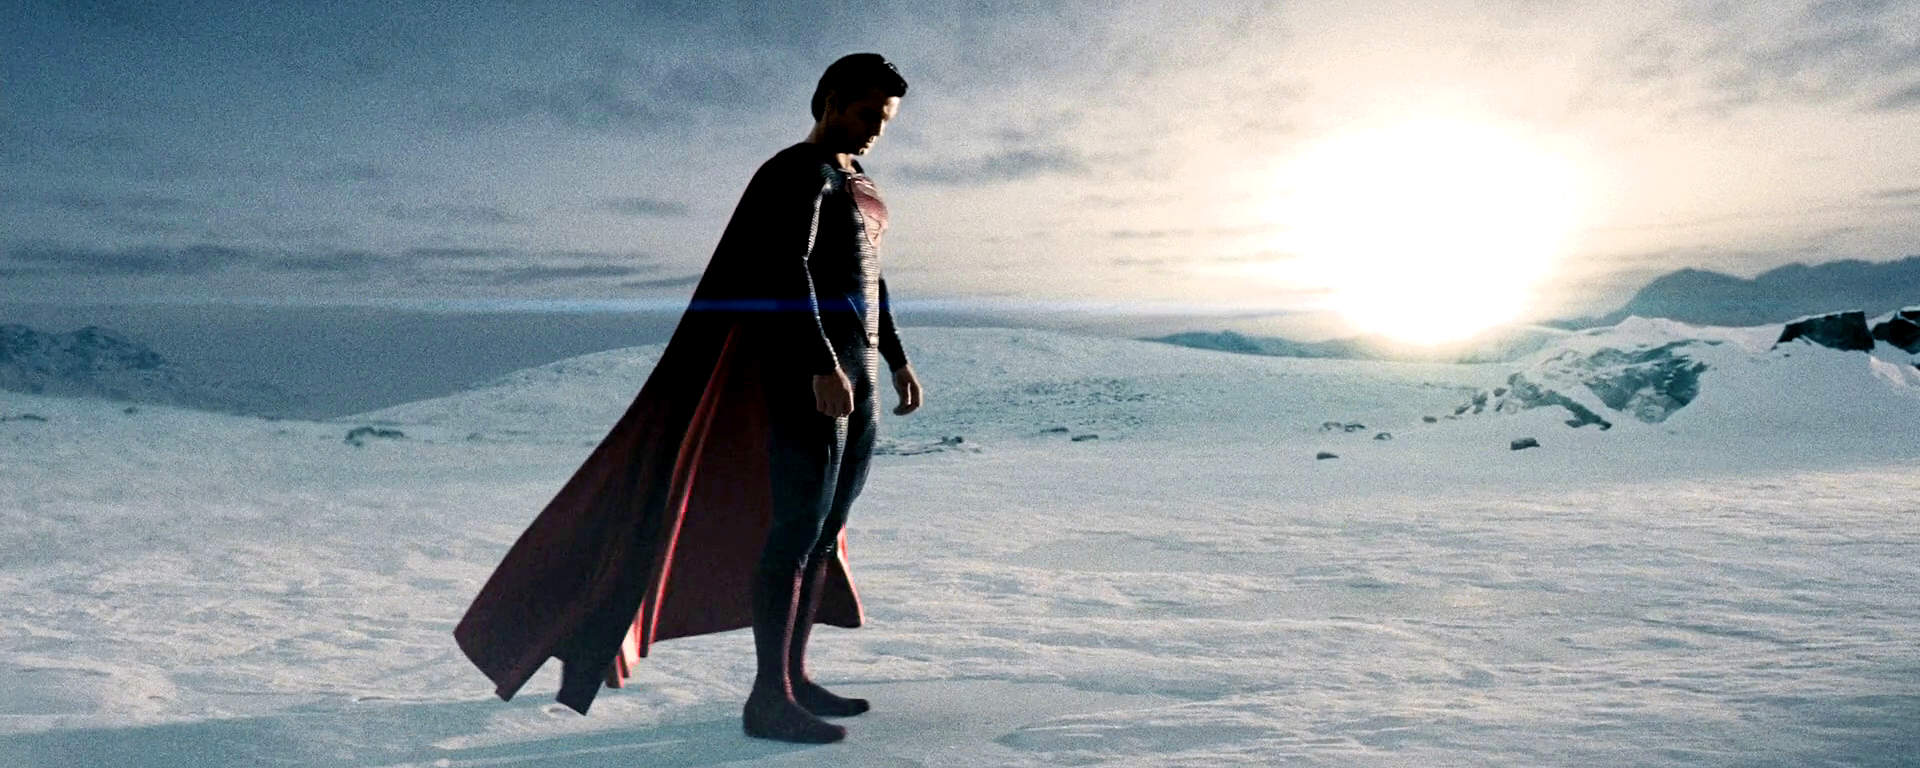 Superman's Origin